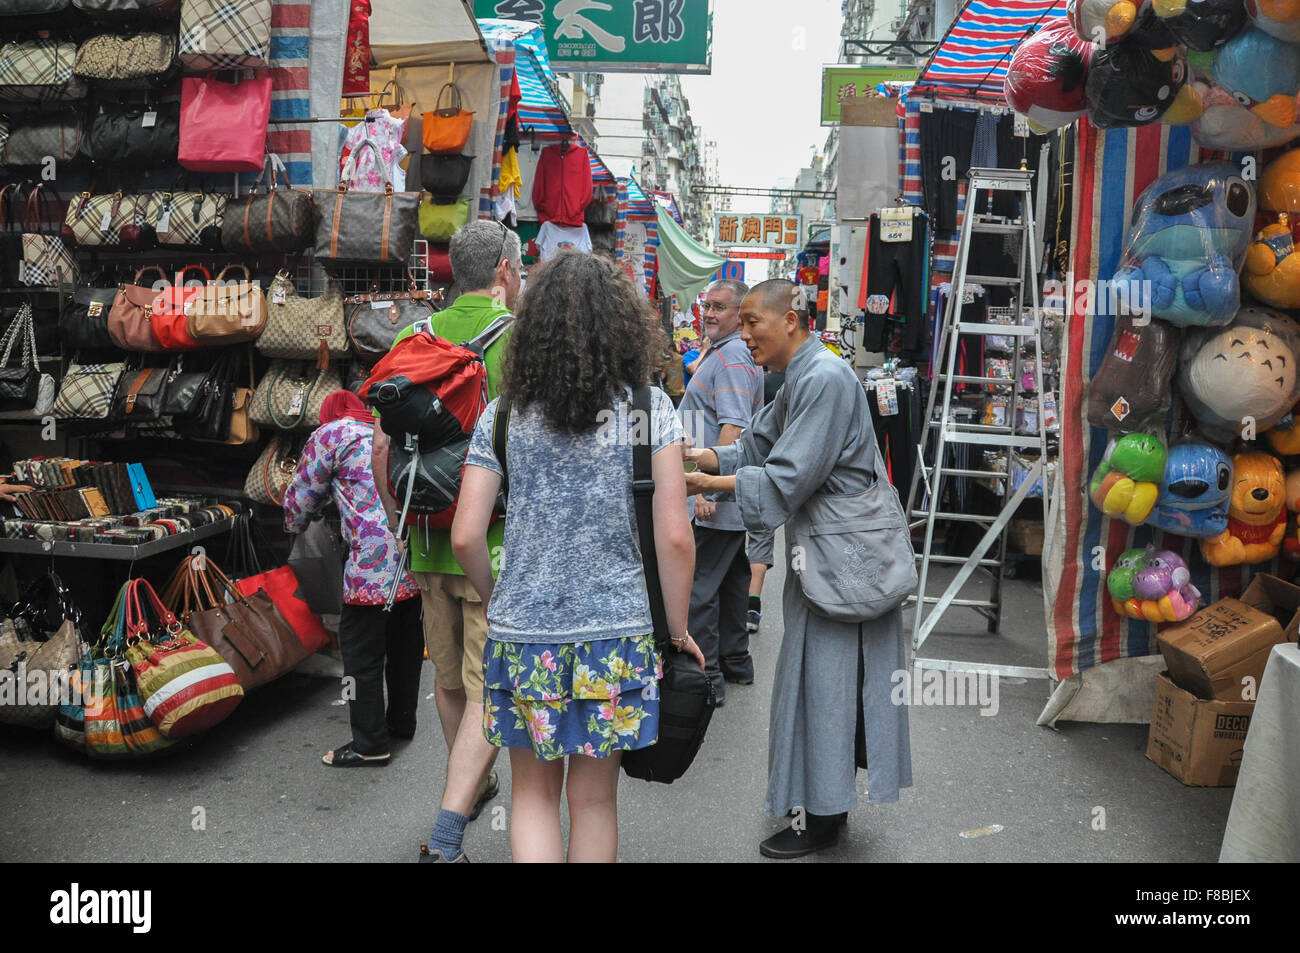 "Mönch" betteln von kaukasische Touristen in Hongkong Markt als Reiseleiter über 'Fake' betteln Mönche erklärt Stockfoto